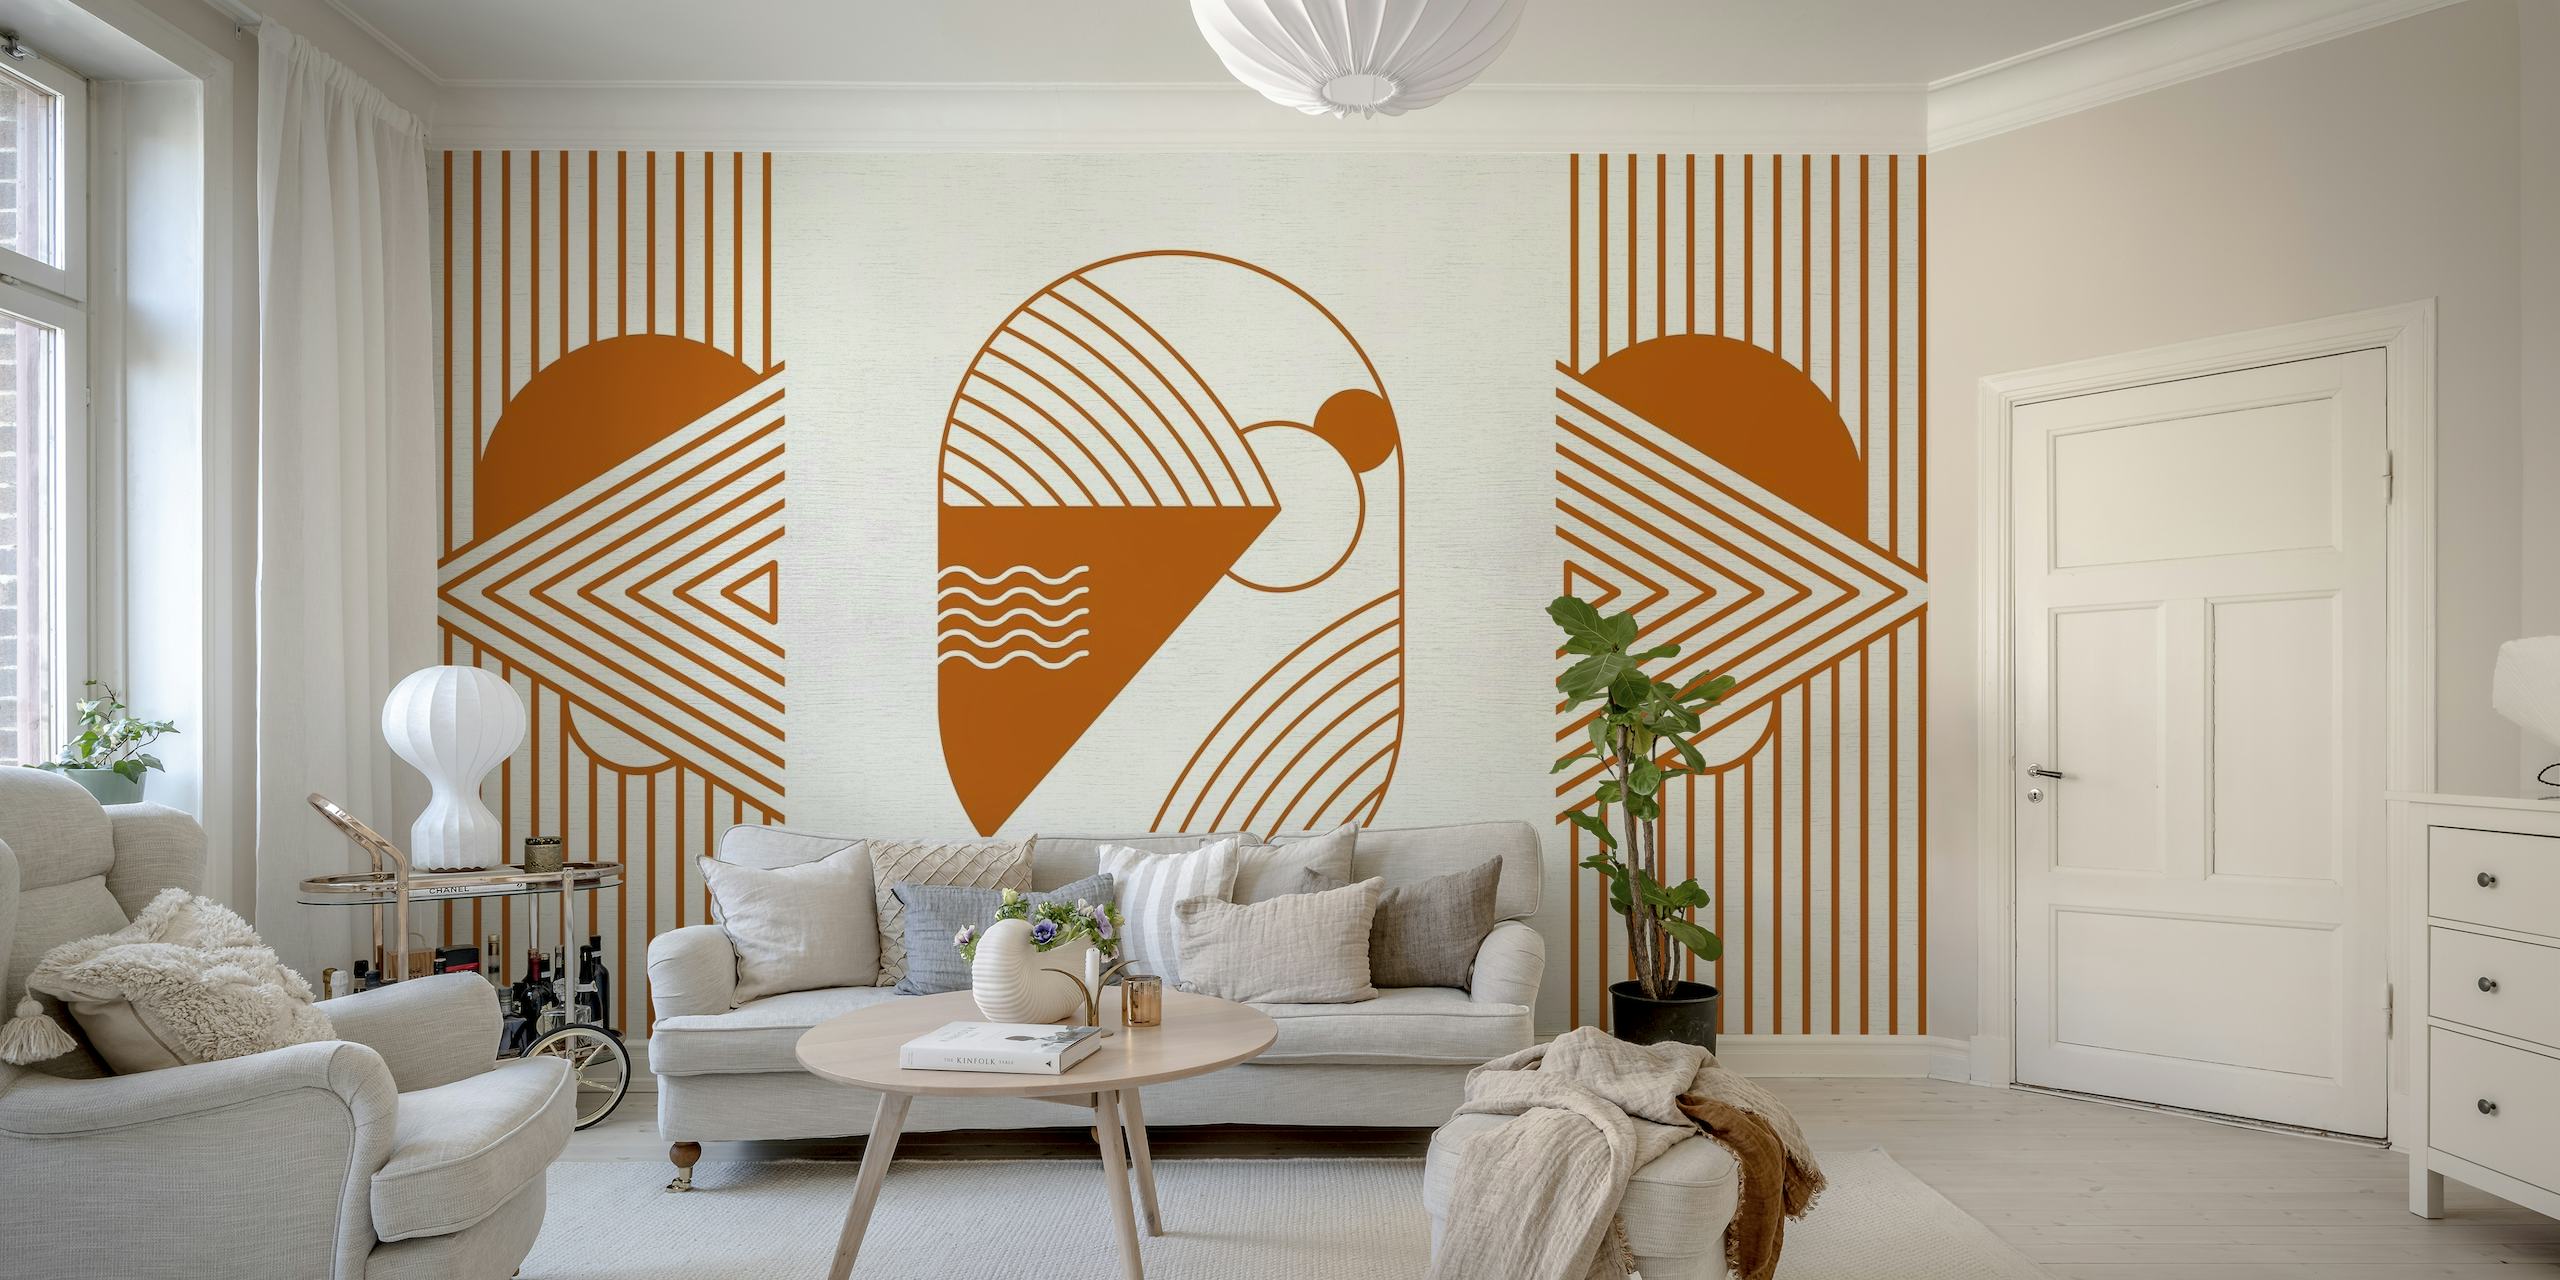 Fotomural vinílico de parede explorador de sonhos cósmicos de inspiração retro em tons de ferrugem laranja com formas geométricas e motivos espaciais.